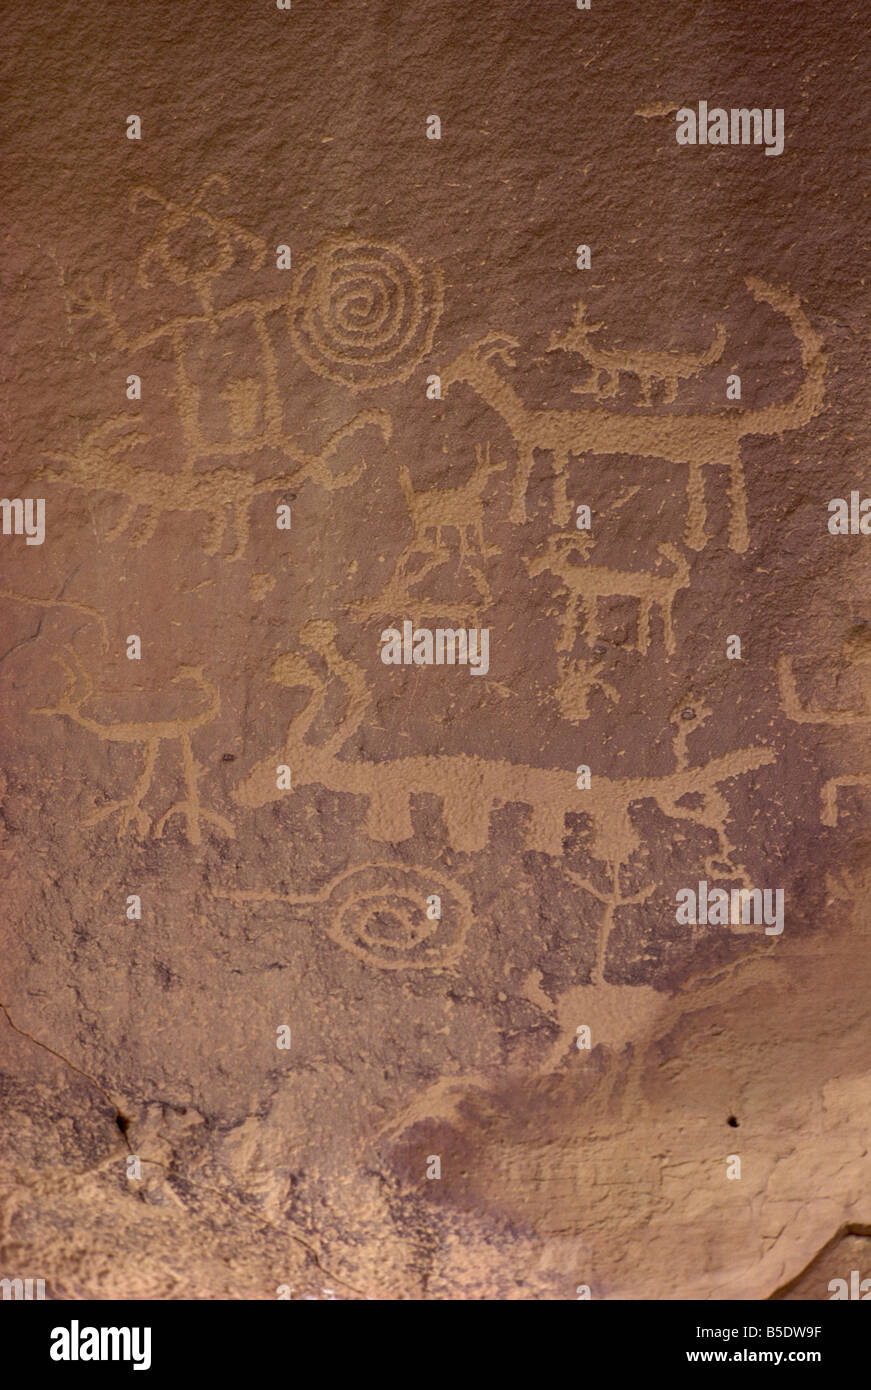 Pétroglyphes Chaco Canyon National Monument Nouveau Mexique États-Unis d'Amérique Amérique du Nord Banque D'Images